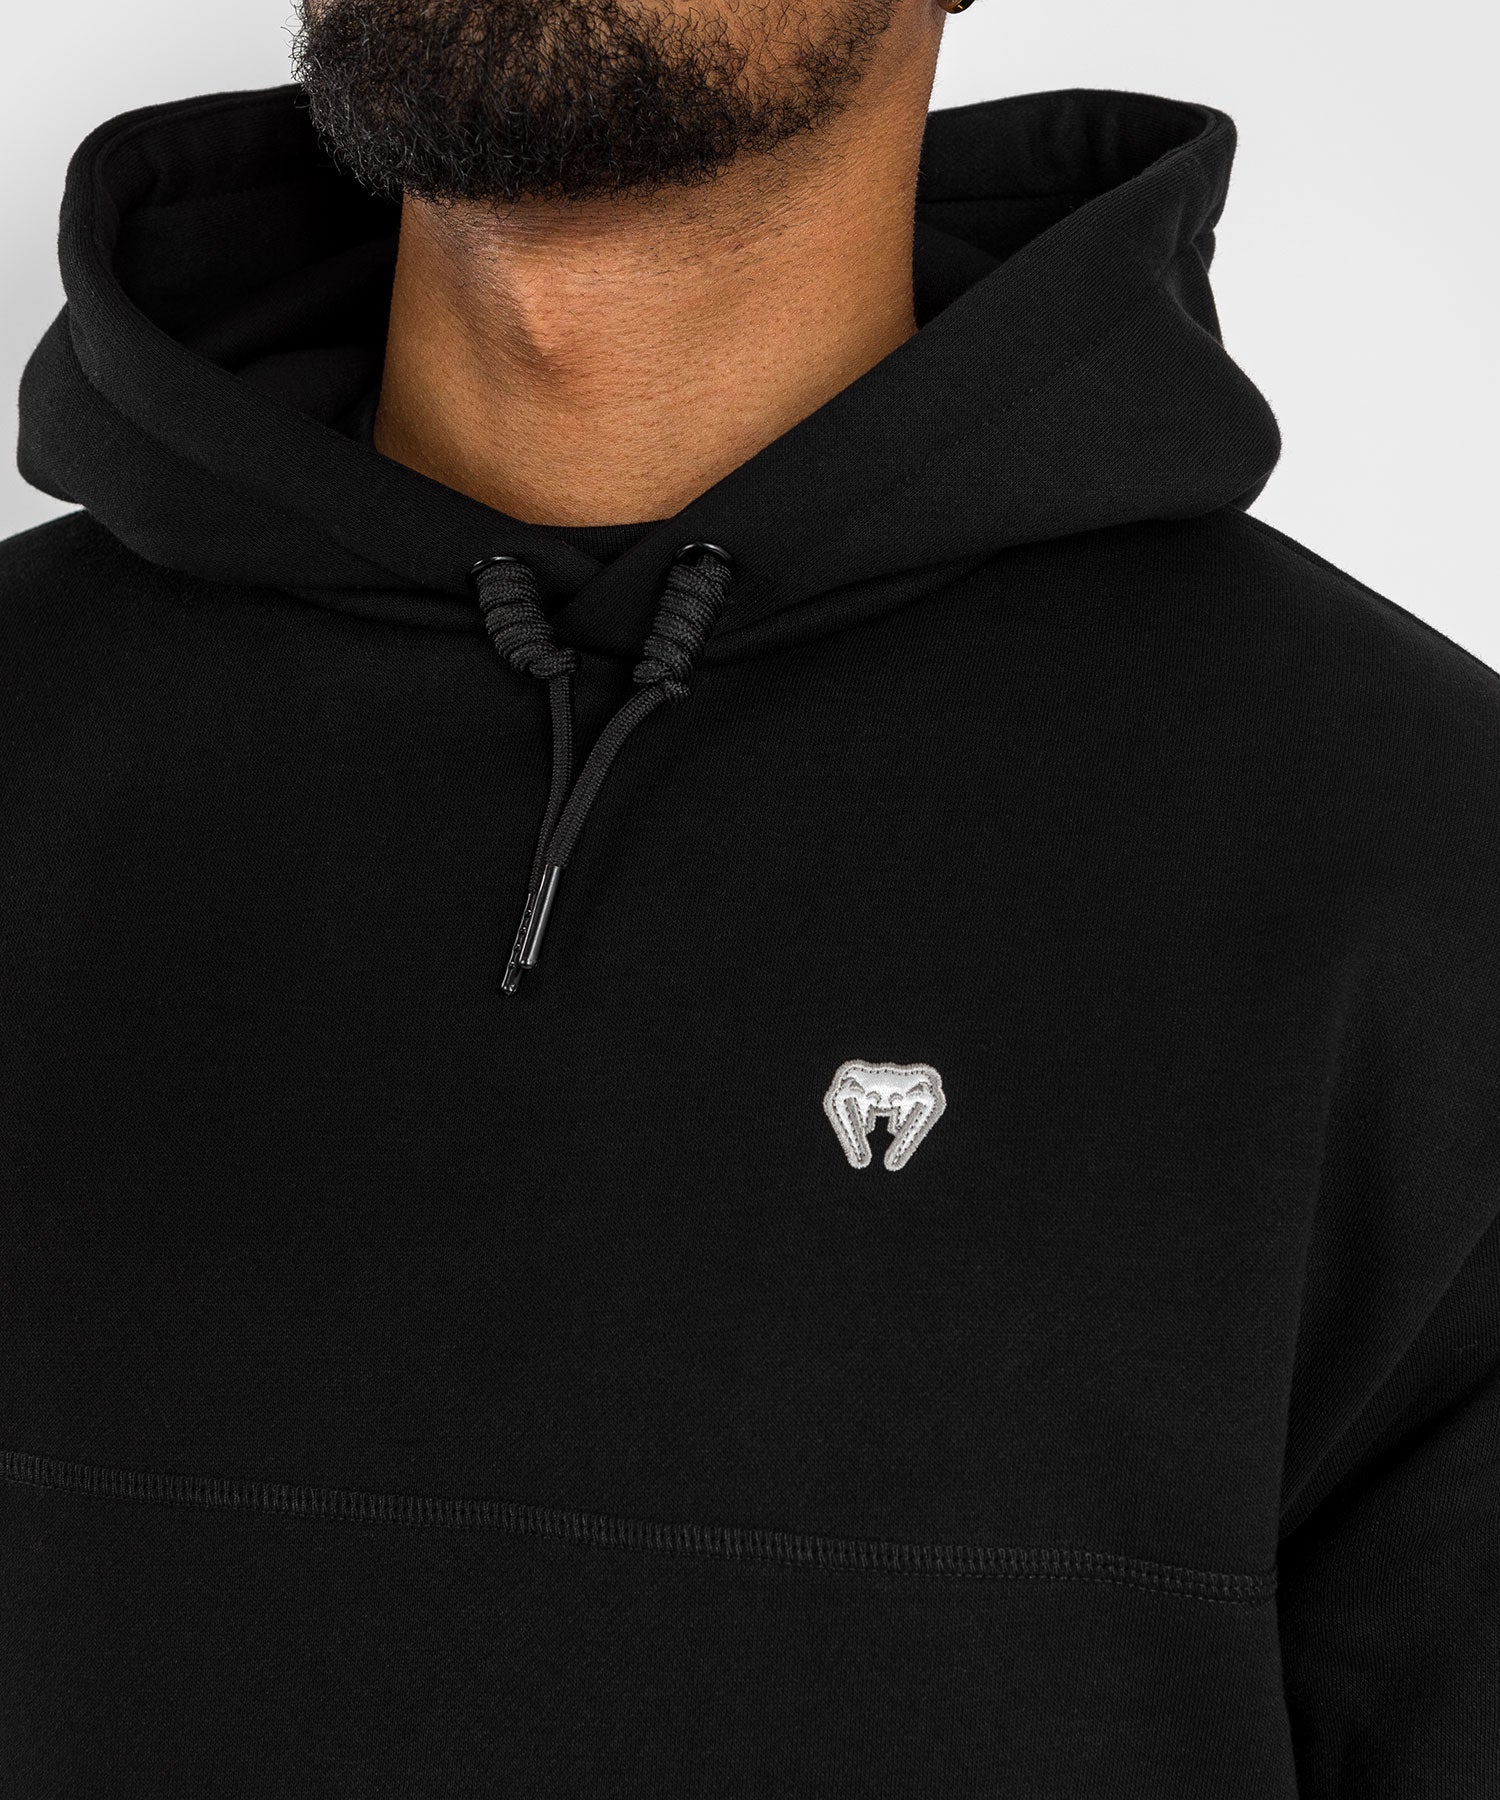 sweatshirt pour homme Venum - Concurrent - Noir noir